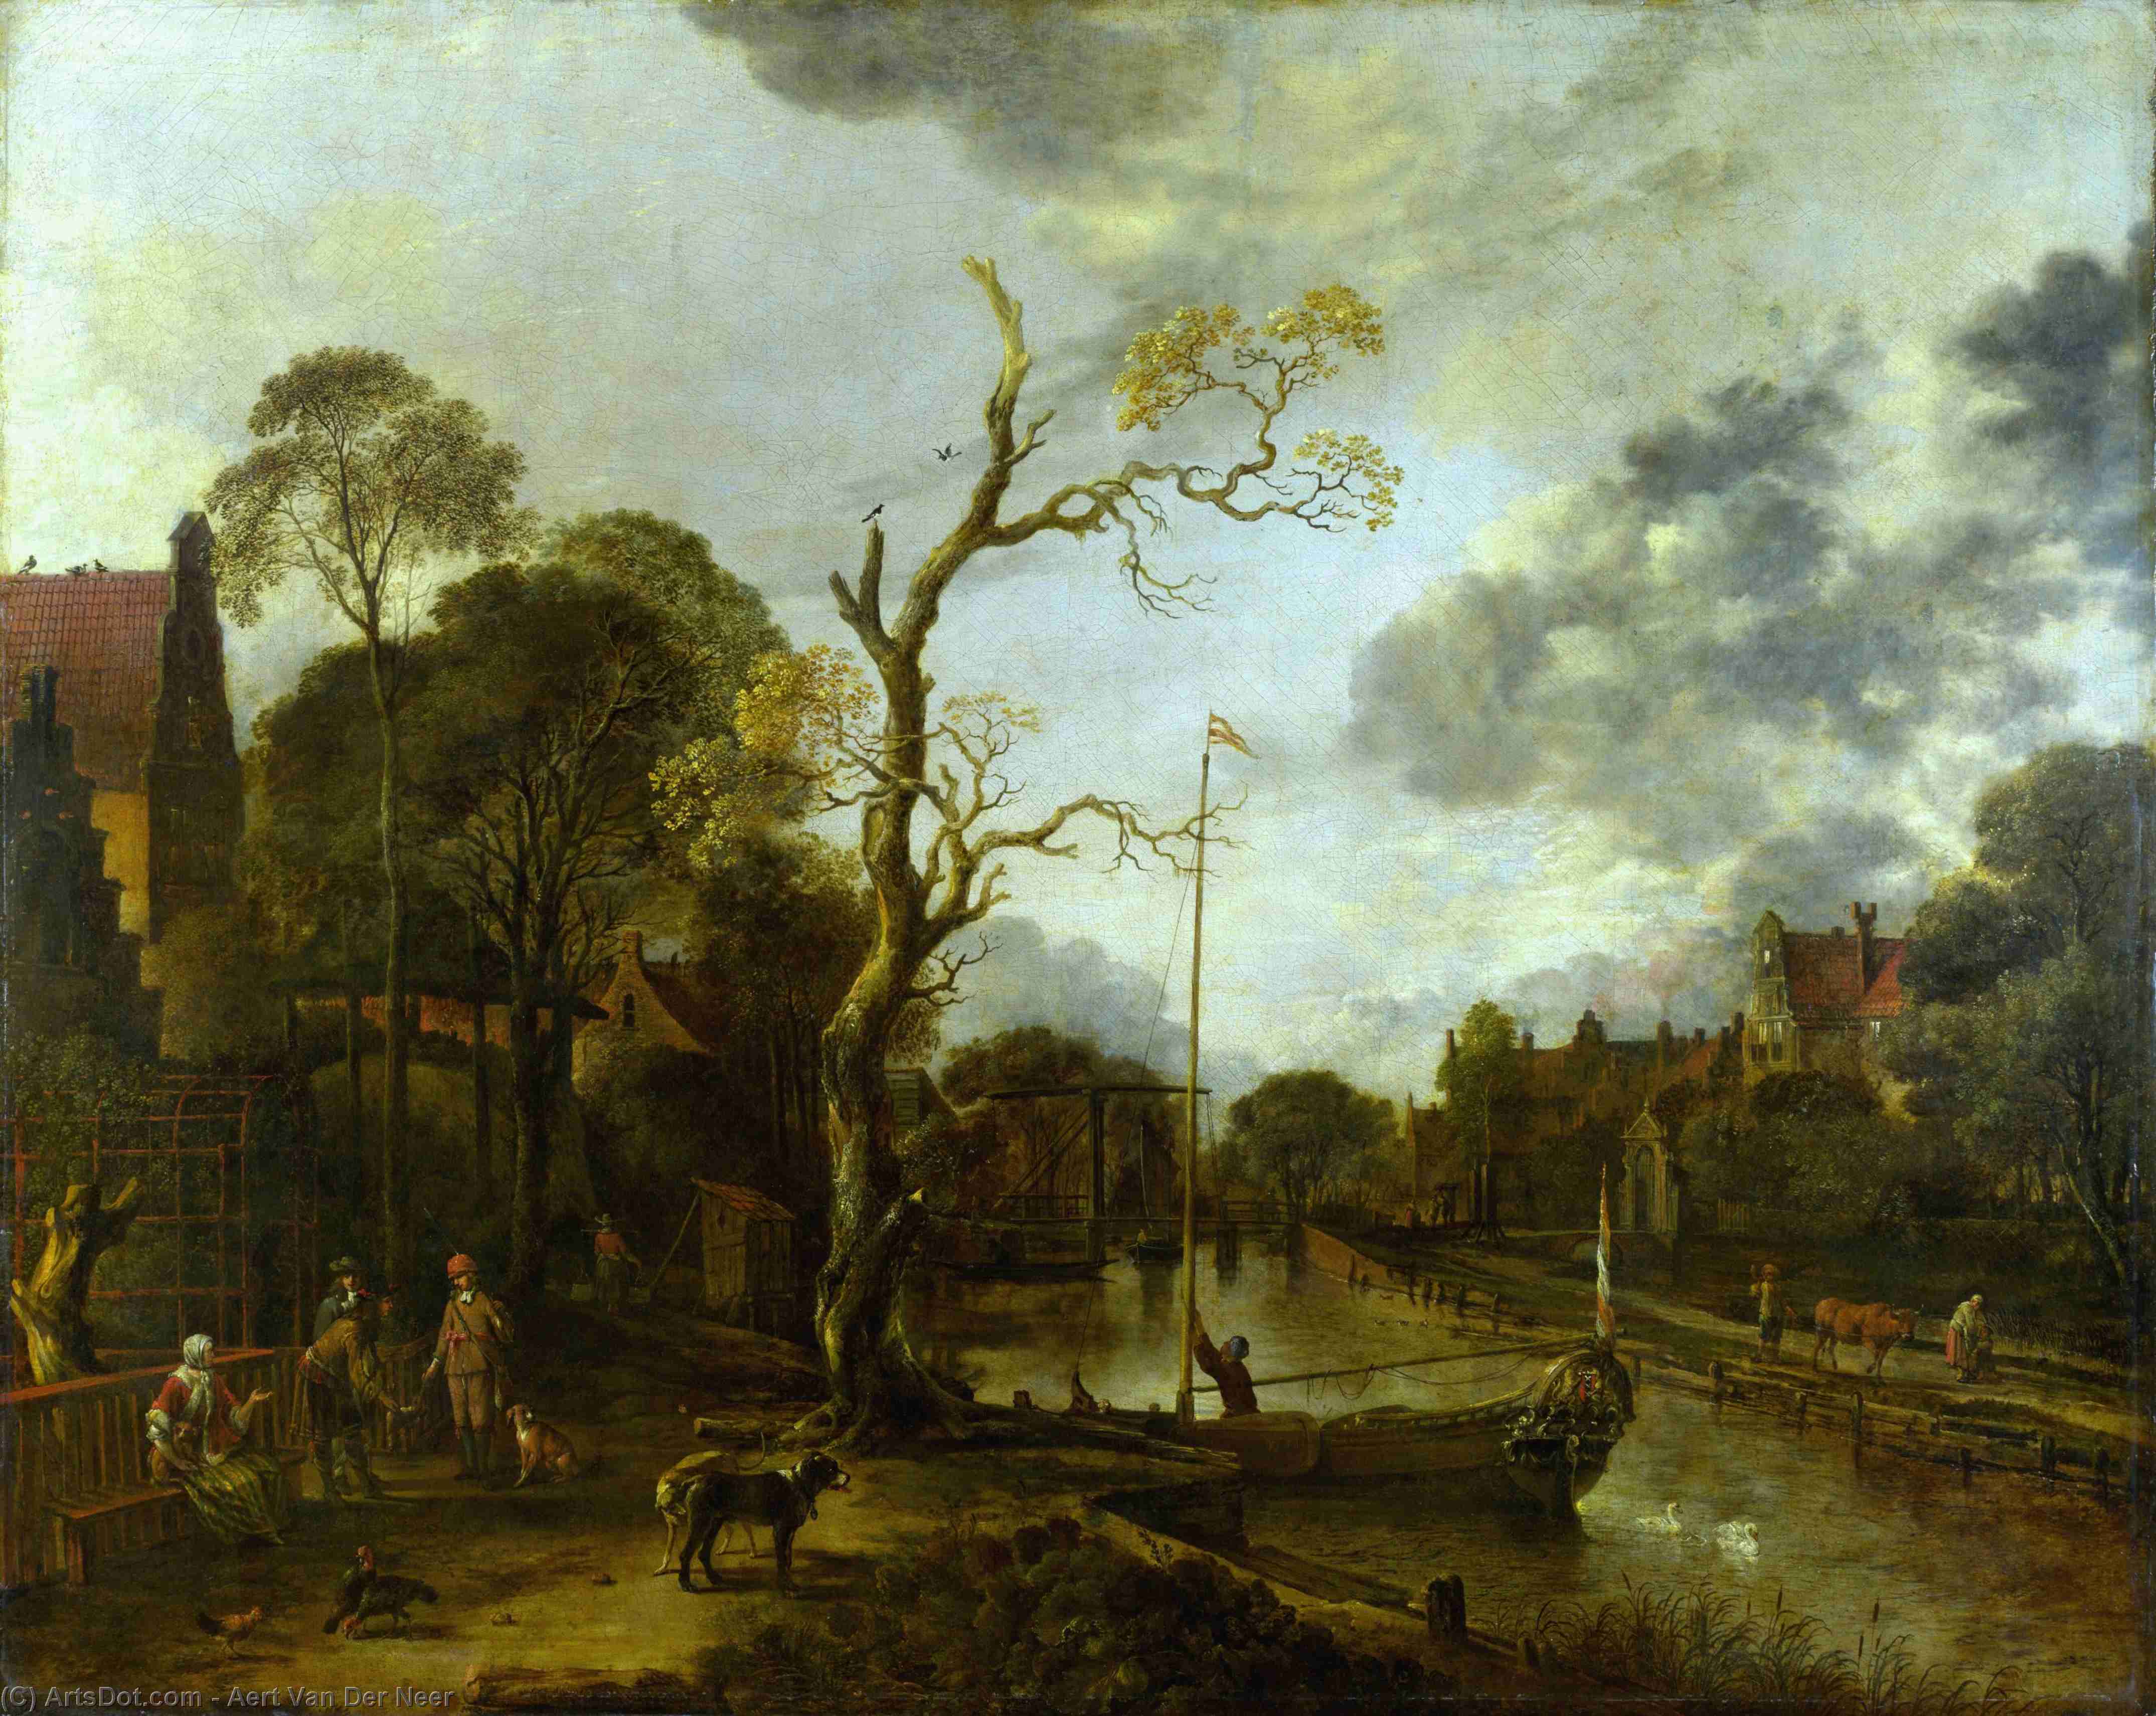 WikiOO.org - אנציקלופדיה לאמנויות יפות - ציור, יצירות אמנות Aert Van Der Neer - A View along a River near a Village at Evening